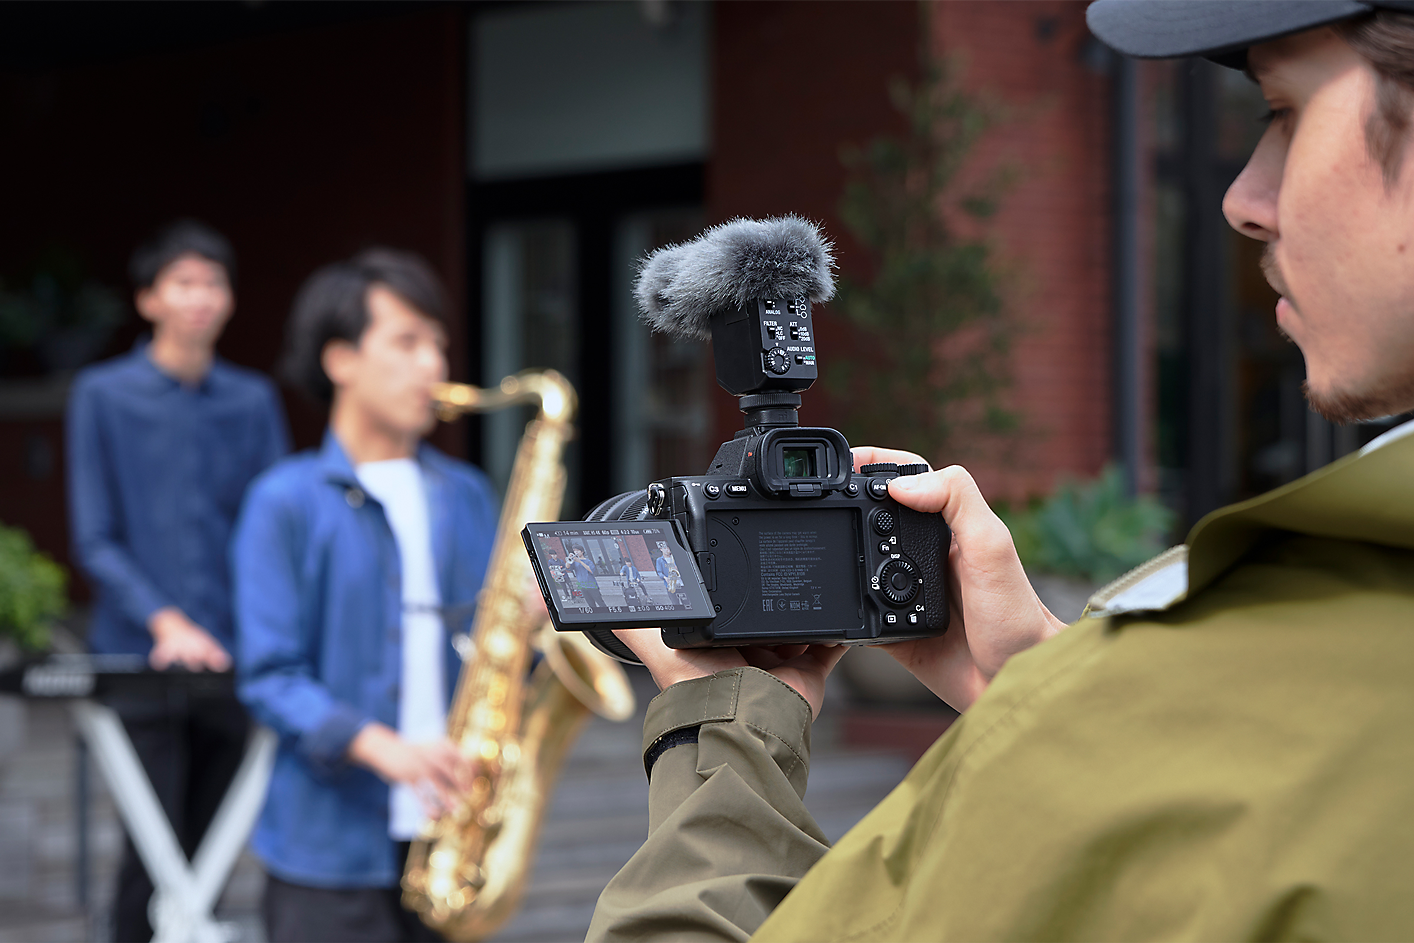 Obrázok kameramana, ktorý natáča hudobníkov v jednosmernom režime s mikrofónom ECM-B10 pripevneným ku kamere.